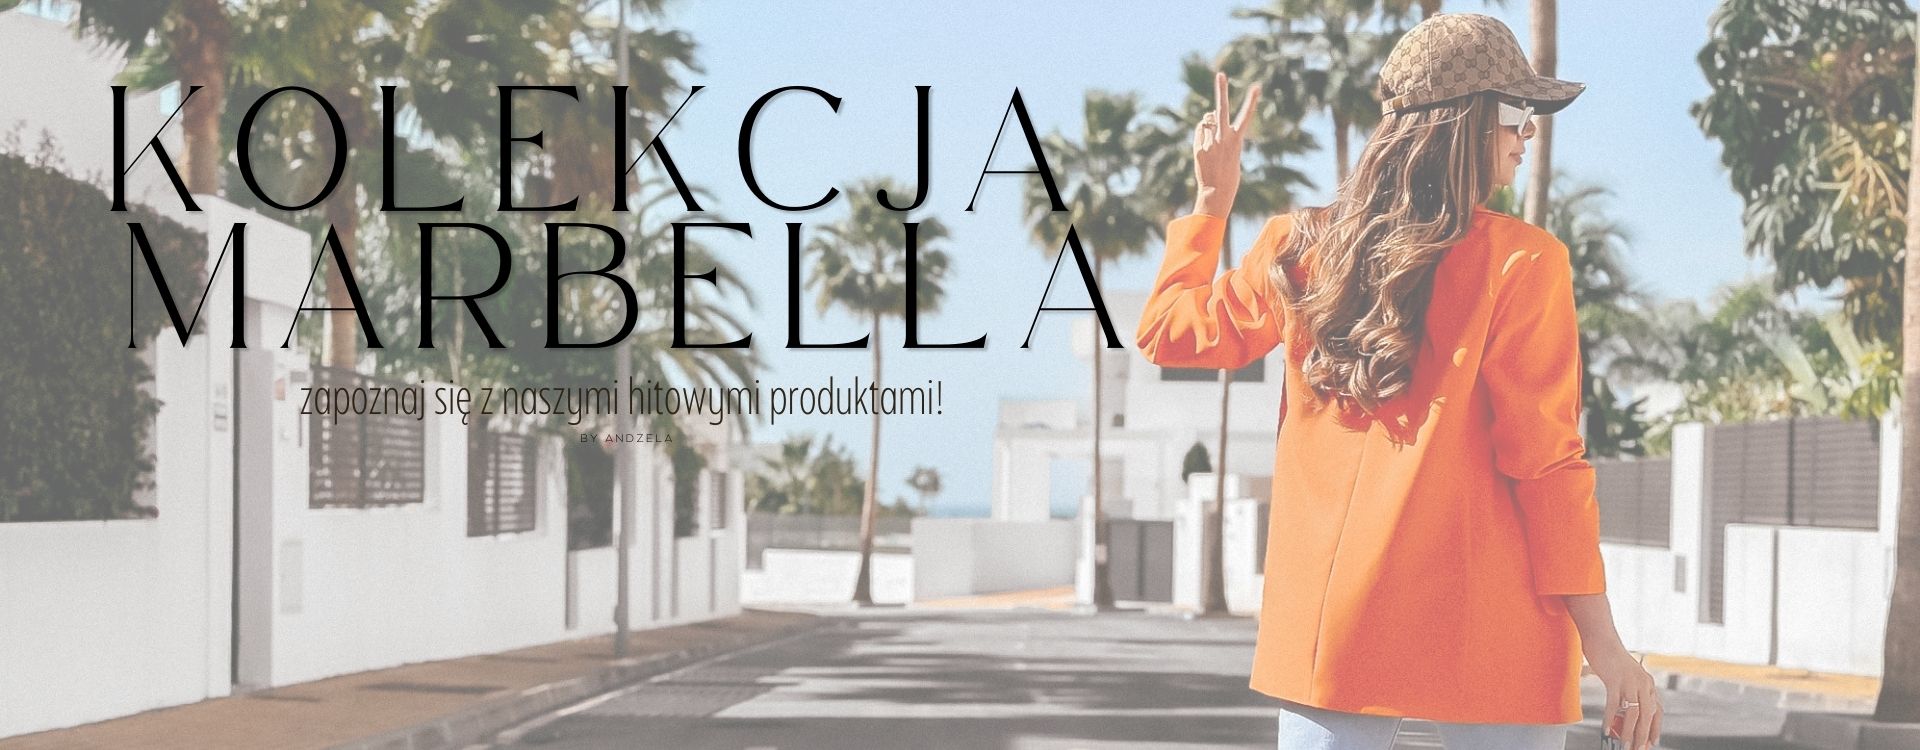 Kolekcja Marbella, zapoznaj się z naszymi hitowymi produktami! 